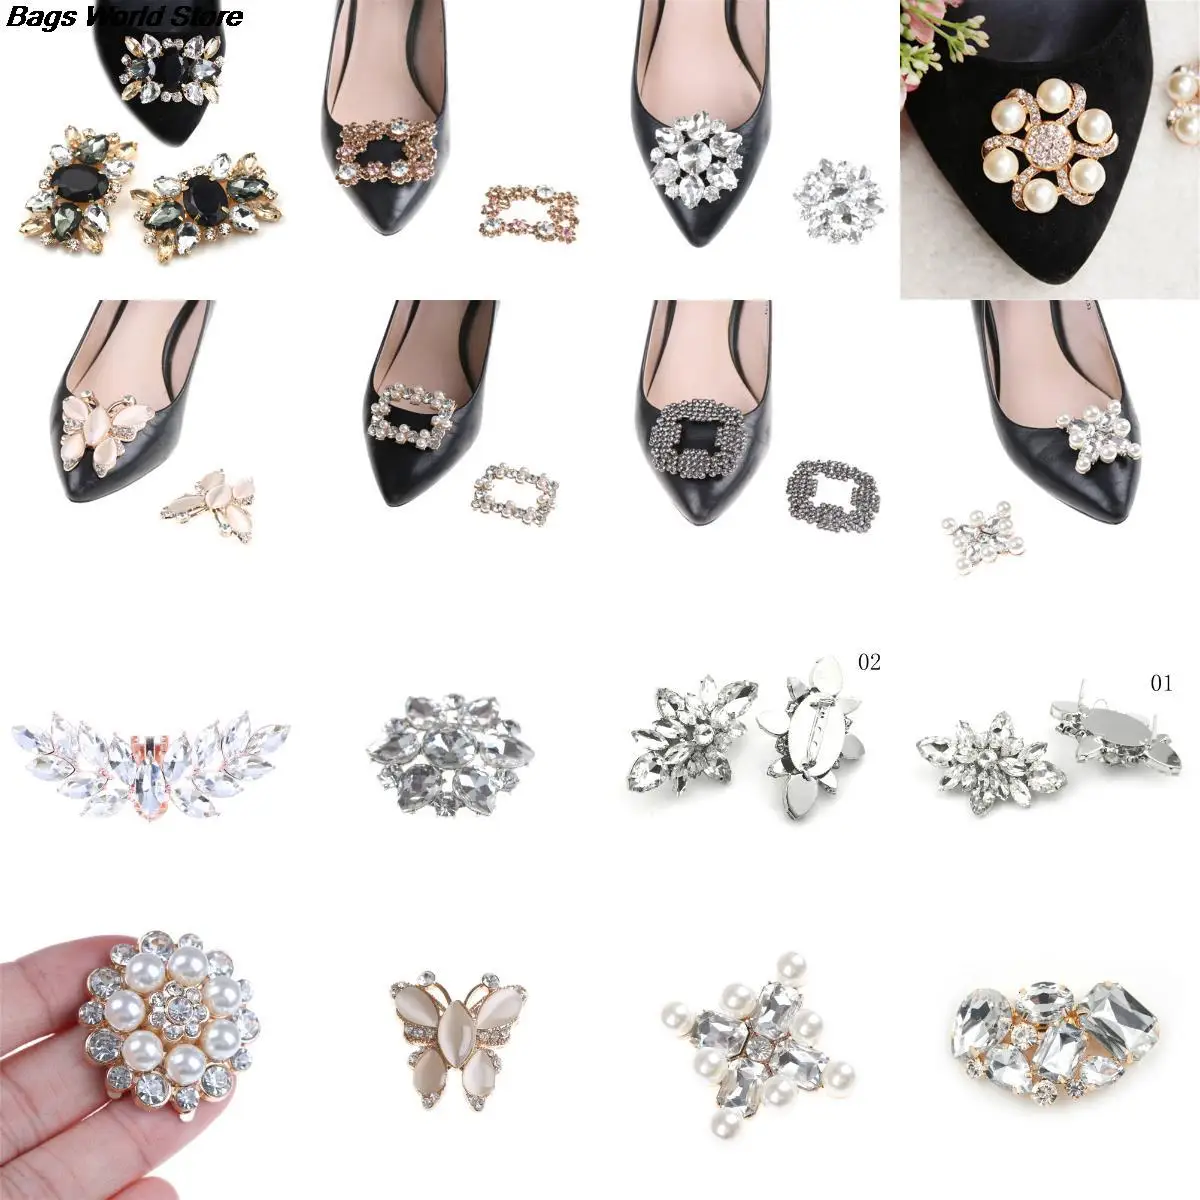 File Receiving machine Prelude Cumpără Accesorii pantofi | 1pc Crystal Shoes Buckle Women Shoes  Decorations Shoe Clips Bridal Charm Decor Fashion Shoe Accessories 16 Types